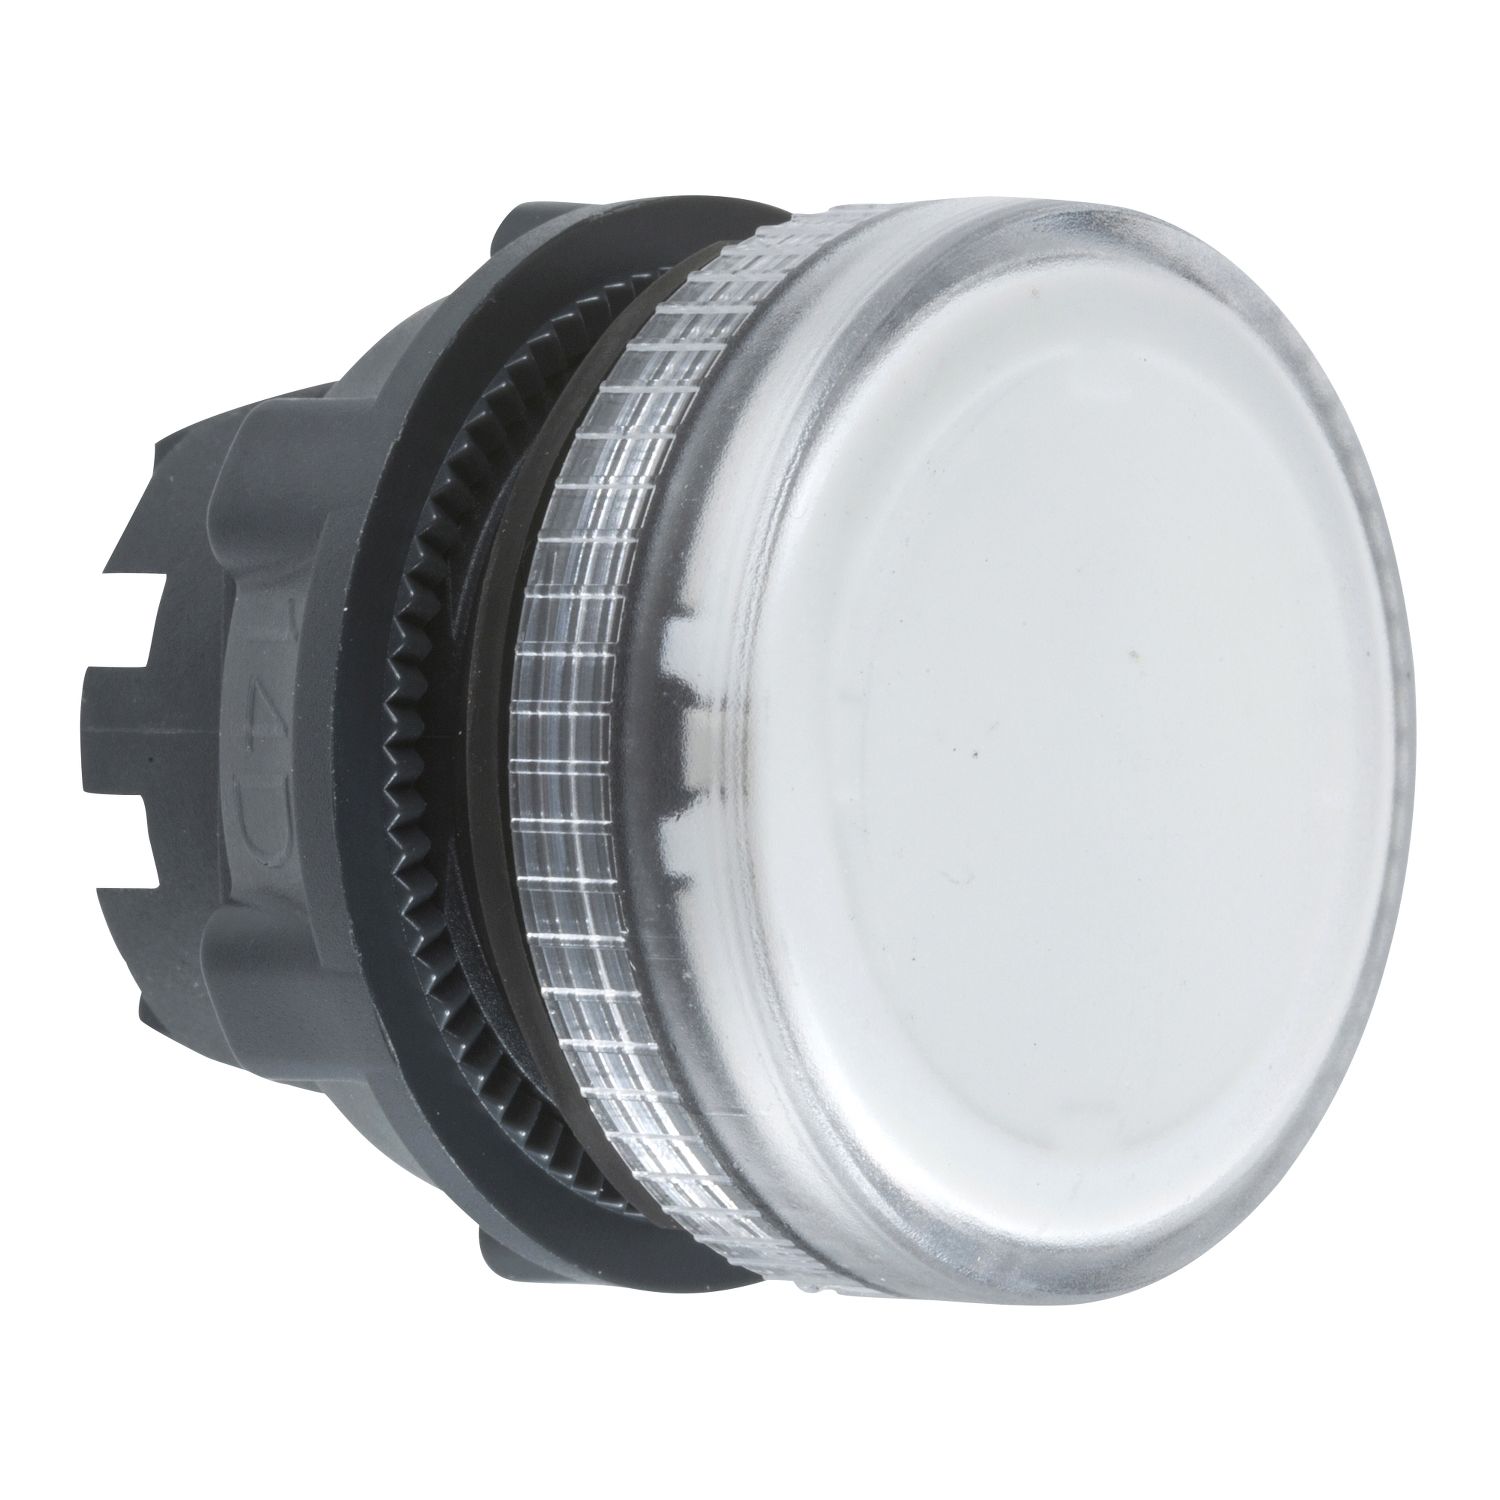 ZB5AV07 Head for pilot light, Harmony XB5, clear Ø22 mm plain lens ba9s bulb